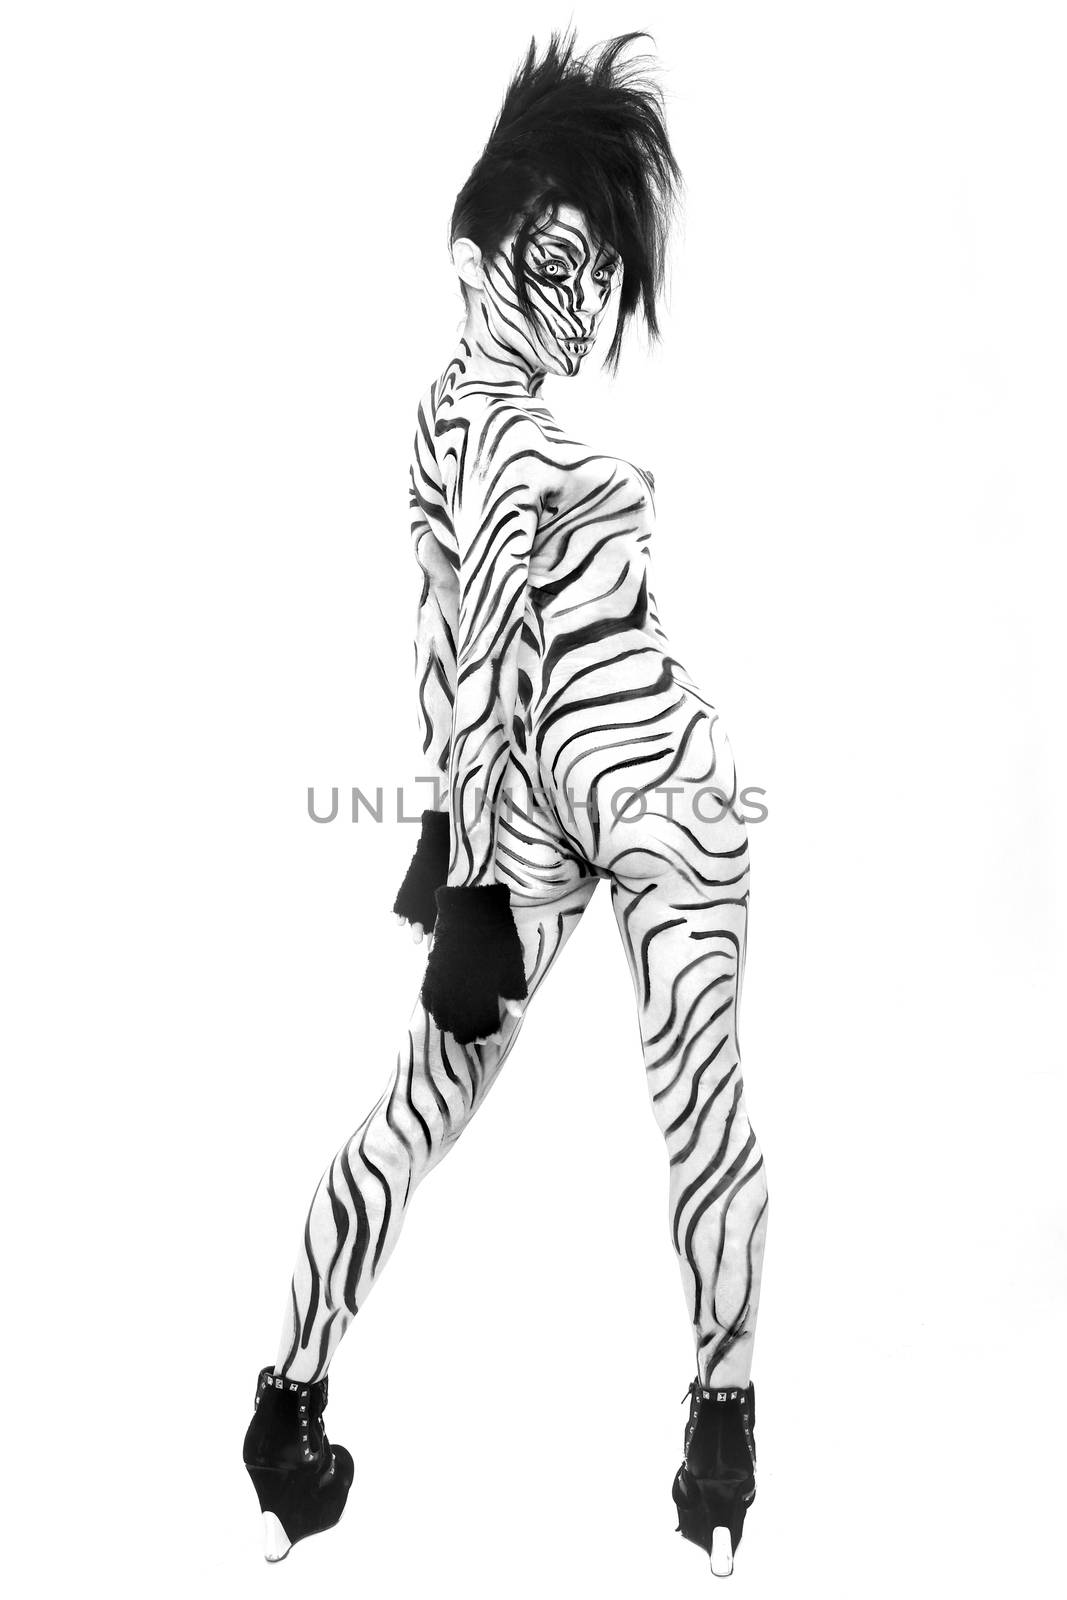 Fierce Nude Woman Body Painted as a Zebra 